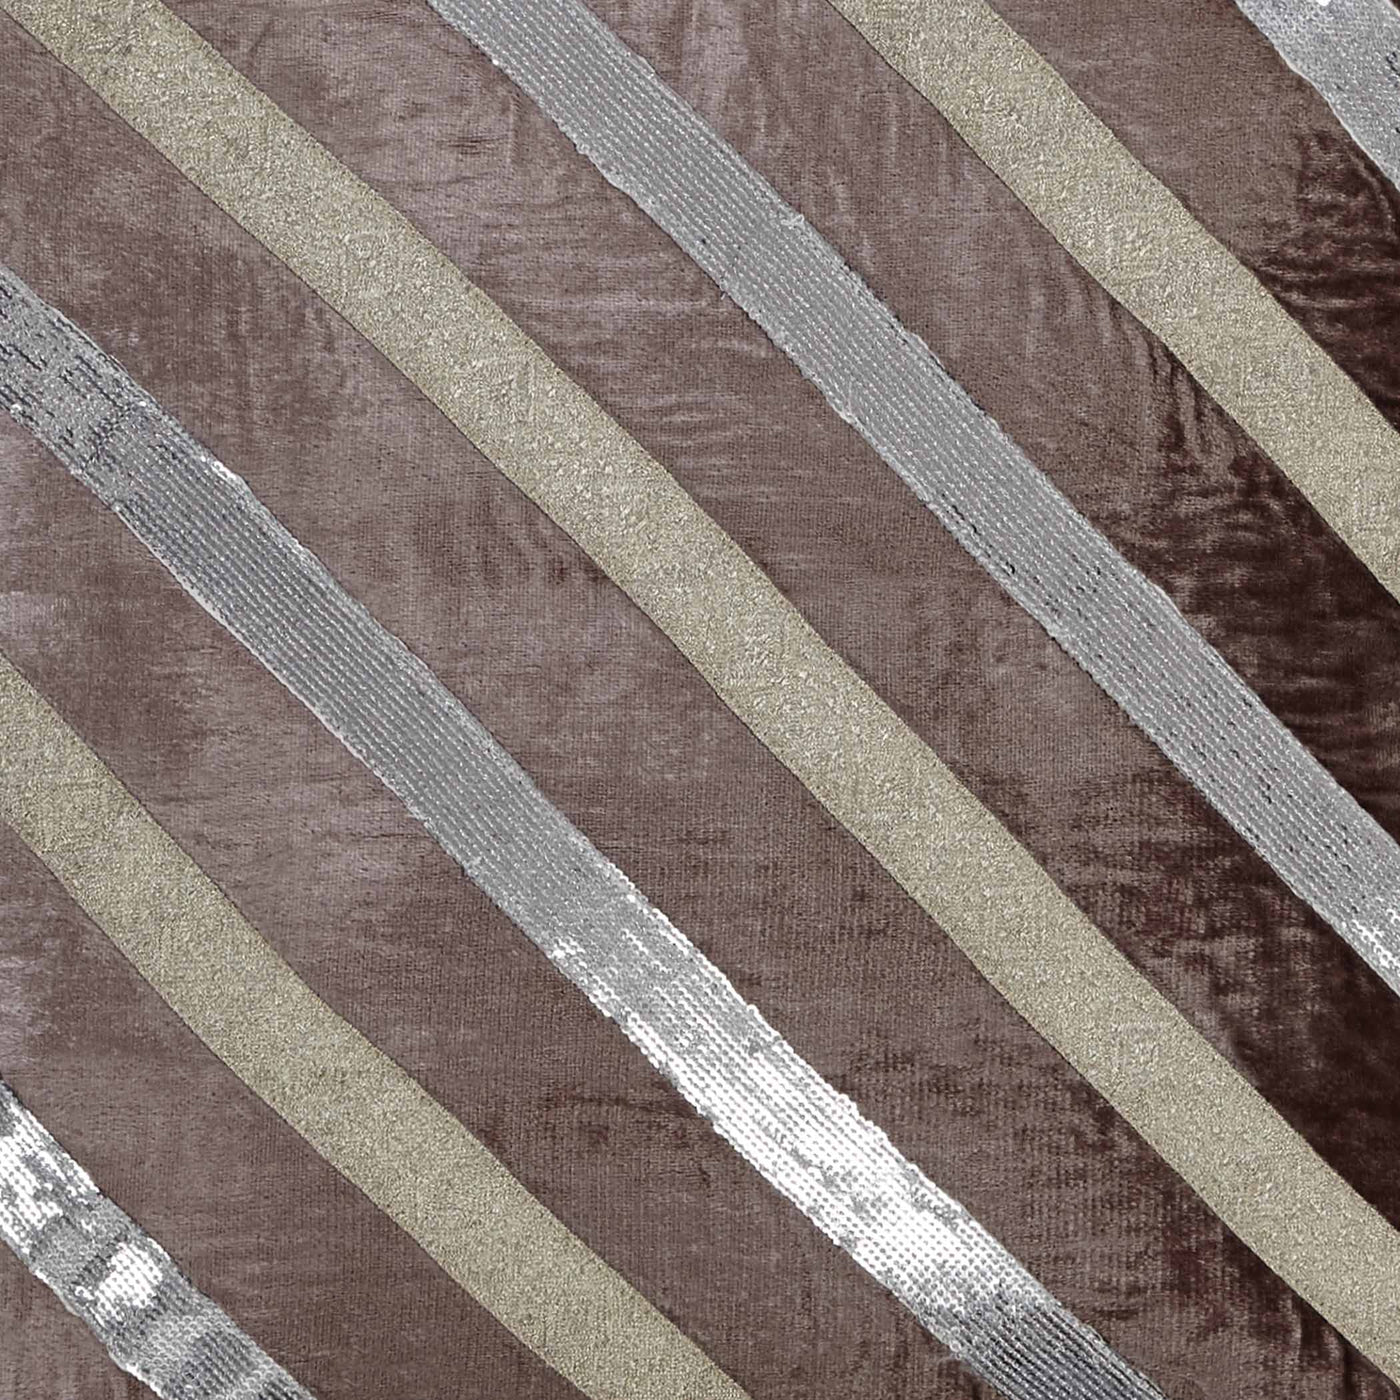 Allura Diagonal Striped Glitzy Pillow 18"